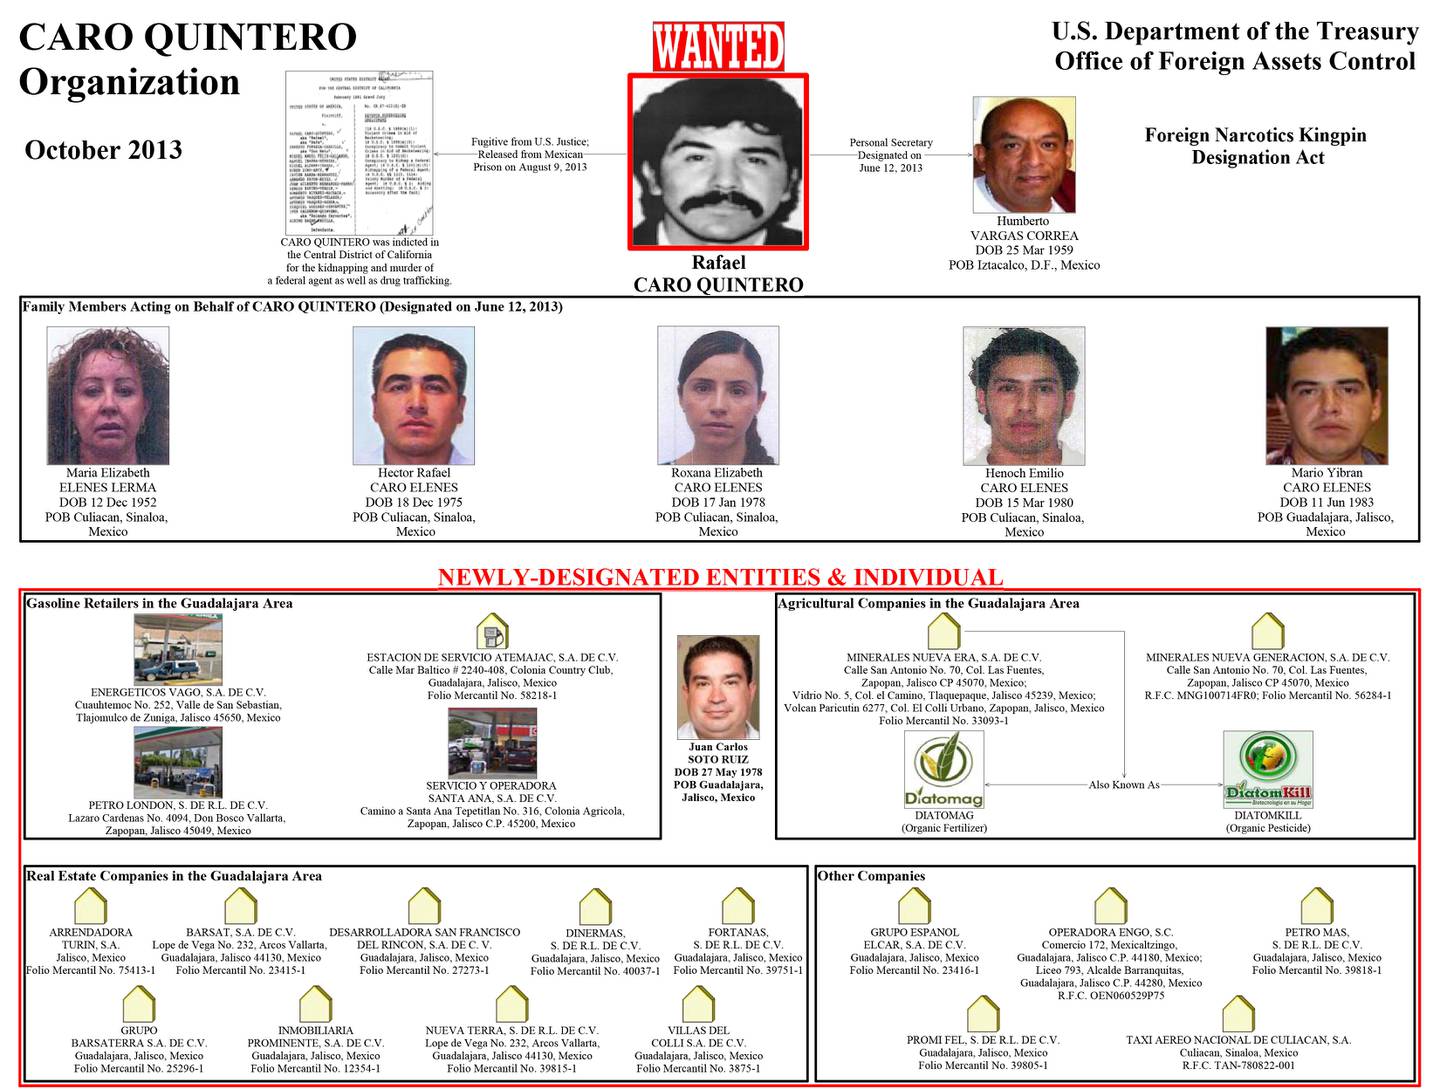 Cartel emitido por la OFAC con la estructura de la organización de Rafael Caro Quintero.